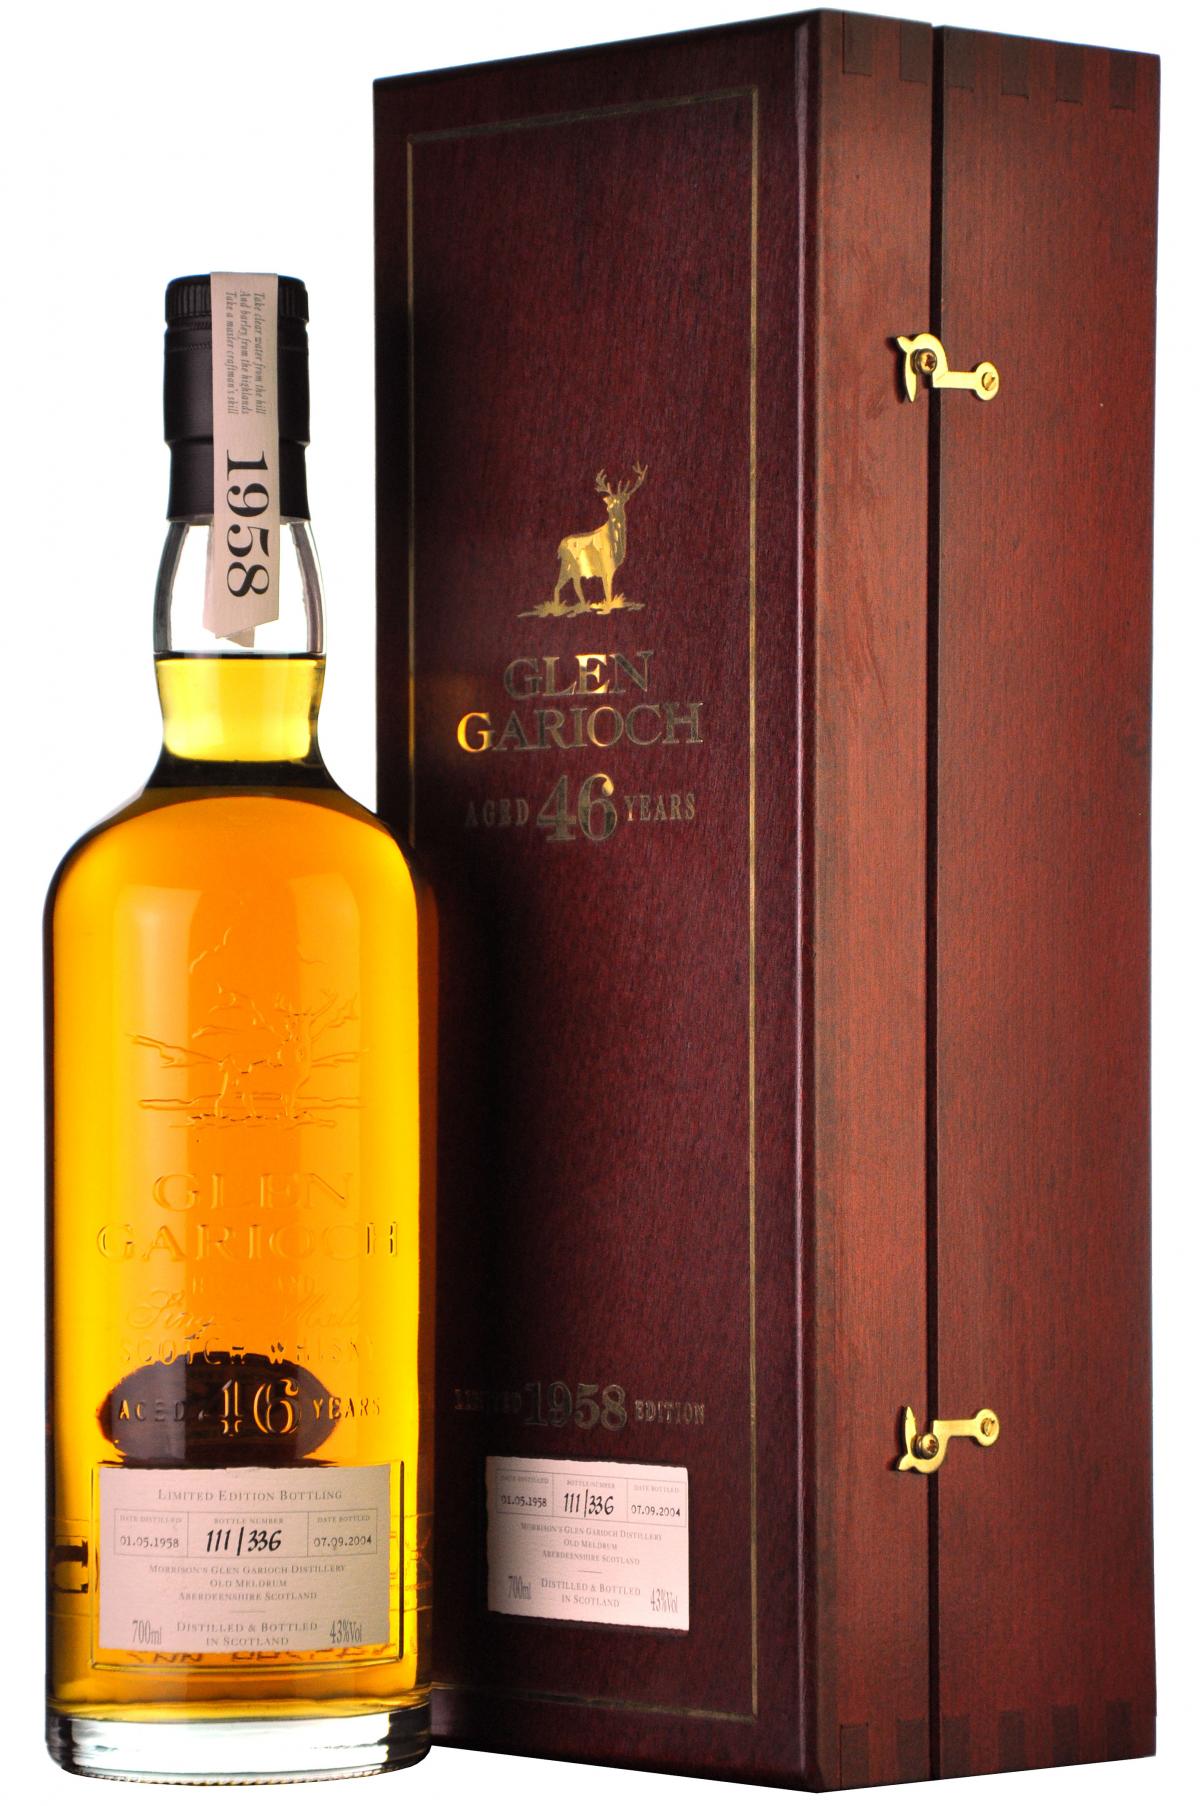 glen garioch 1958, 46 year old, single malt scotch whisky